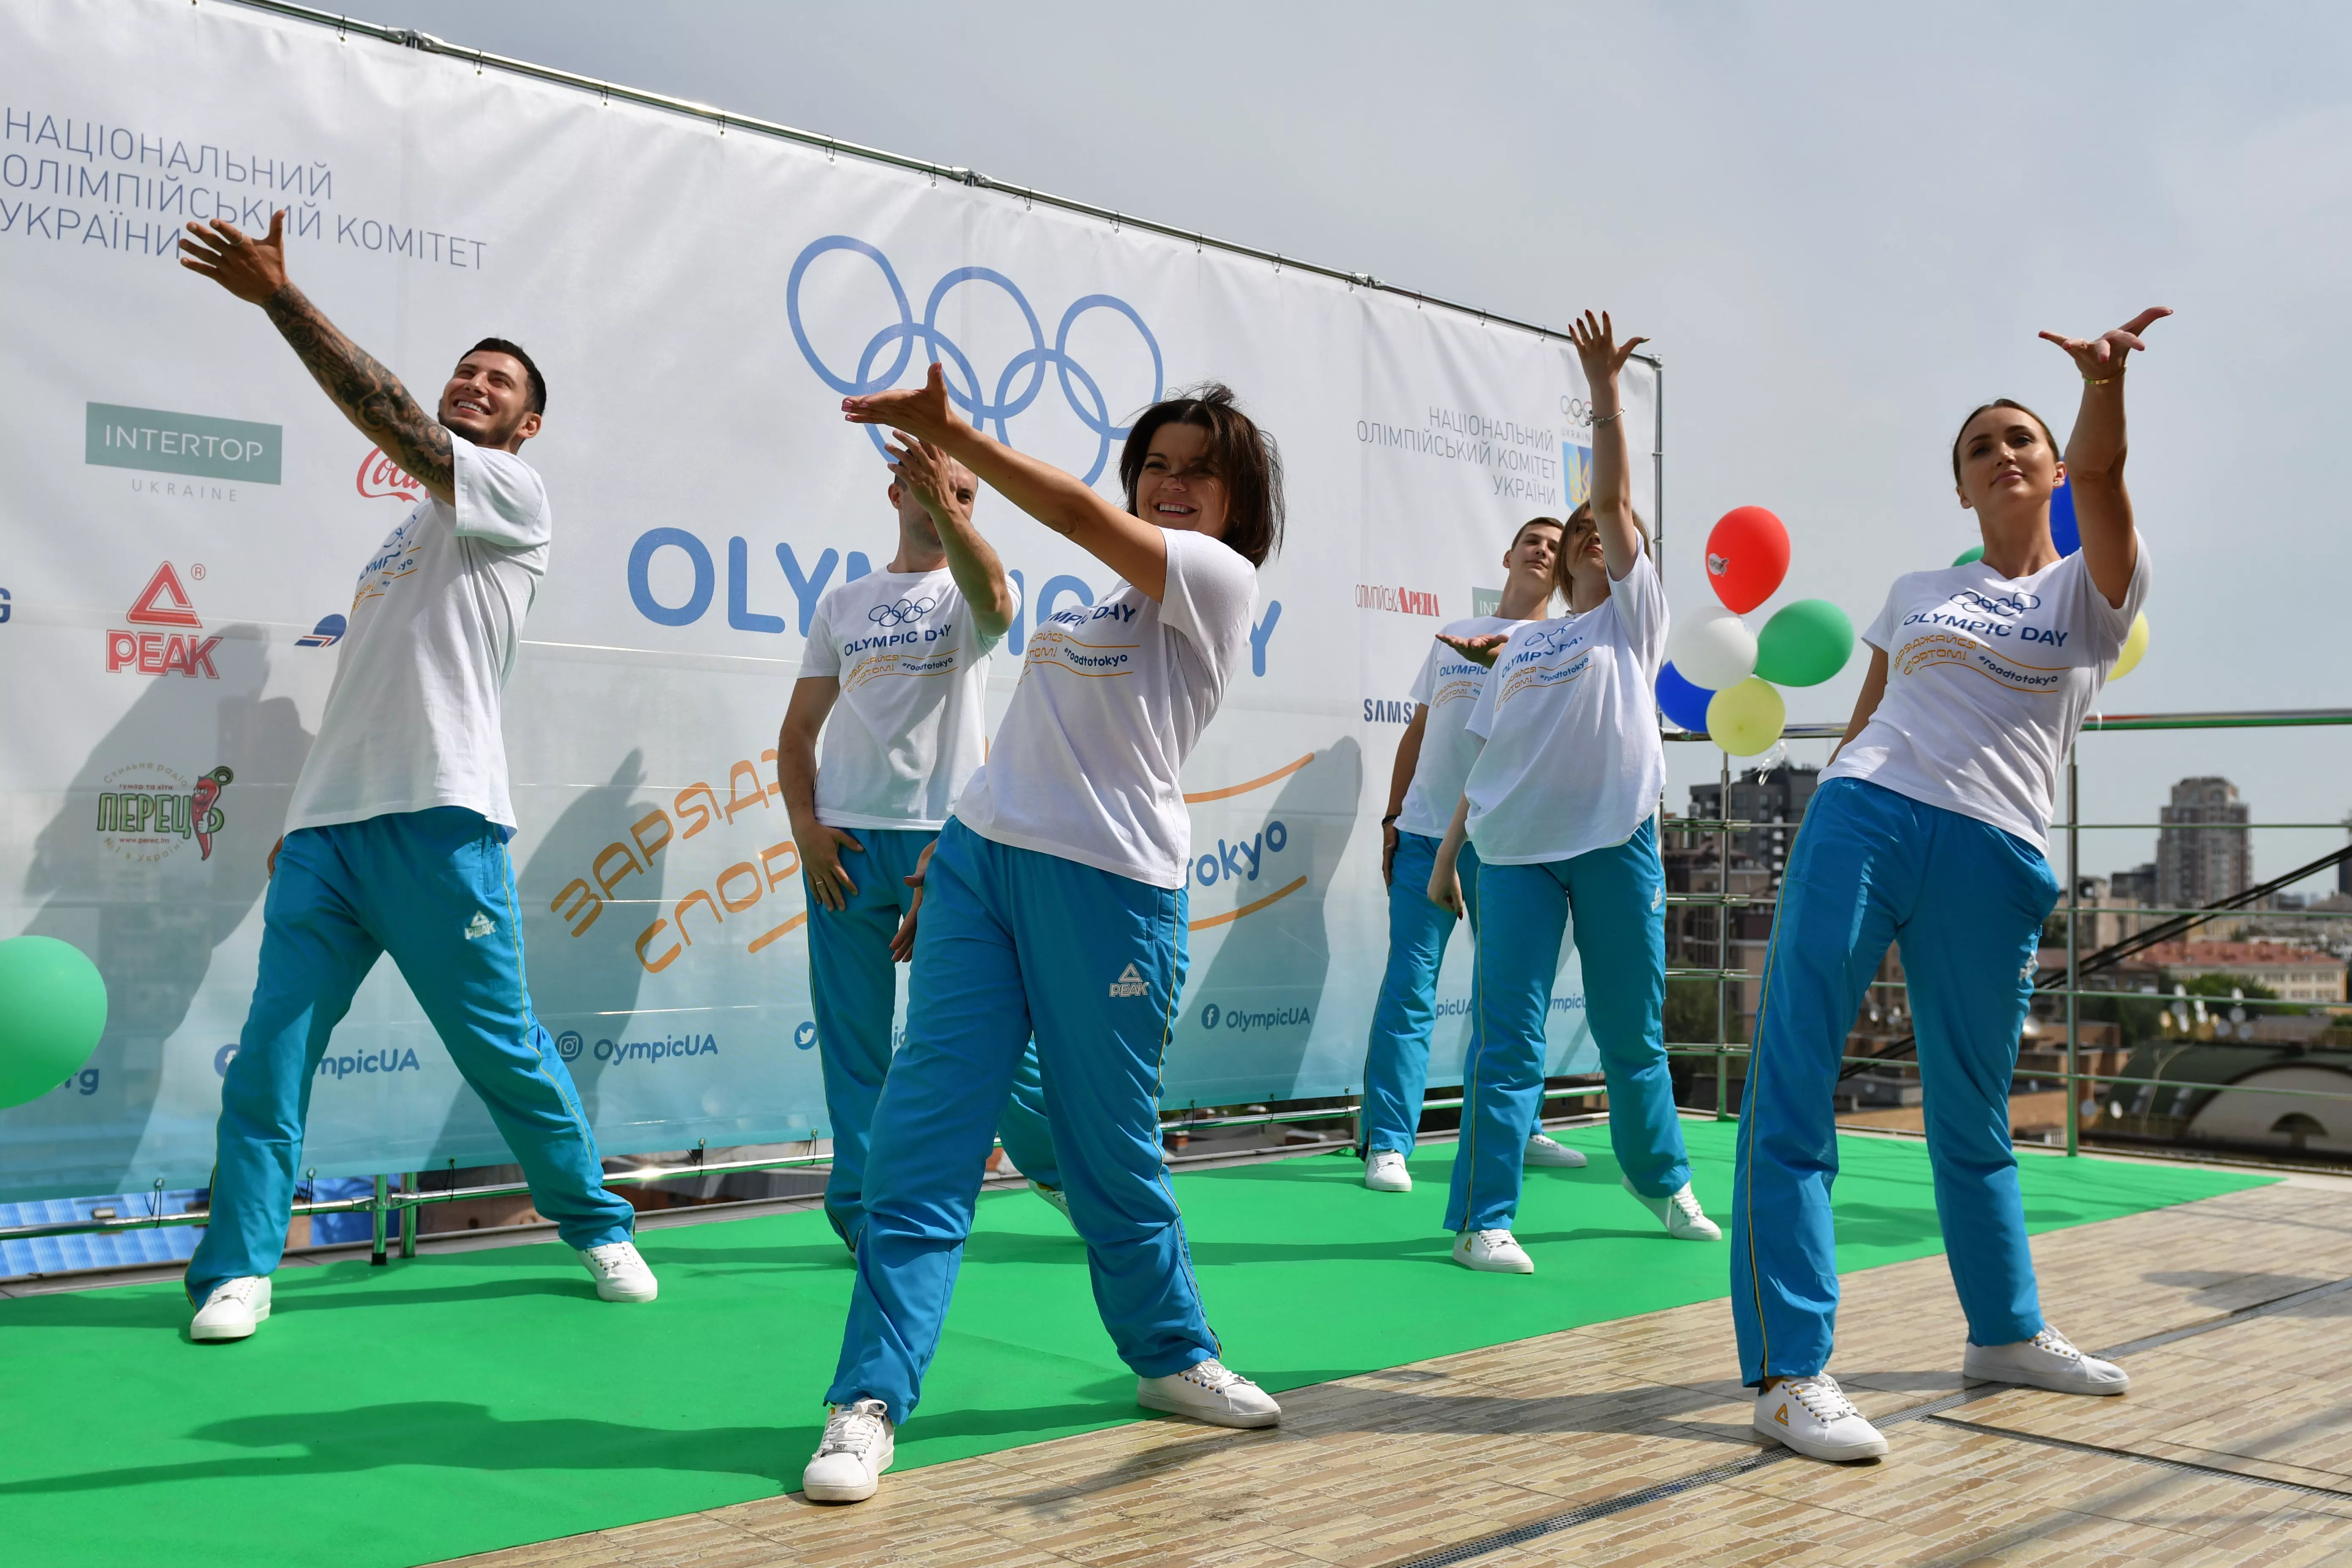 Олимпийская зарядка стартовала в Киеве